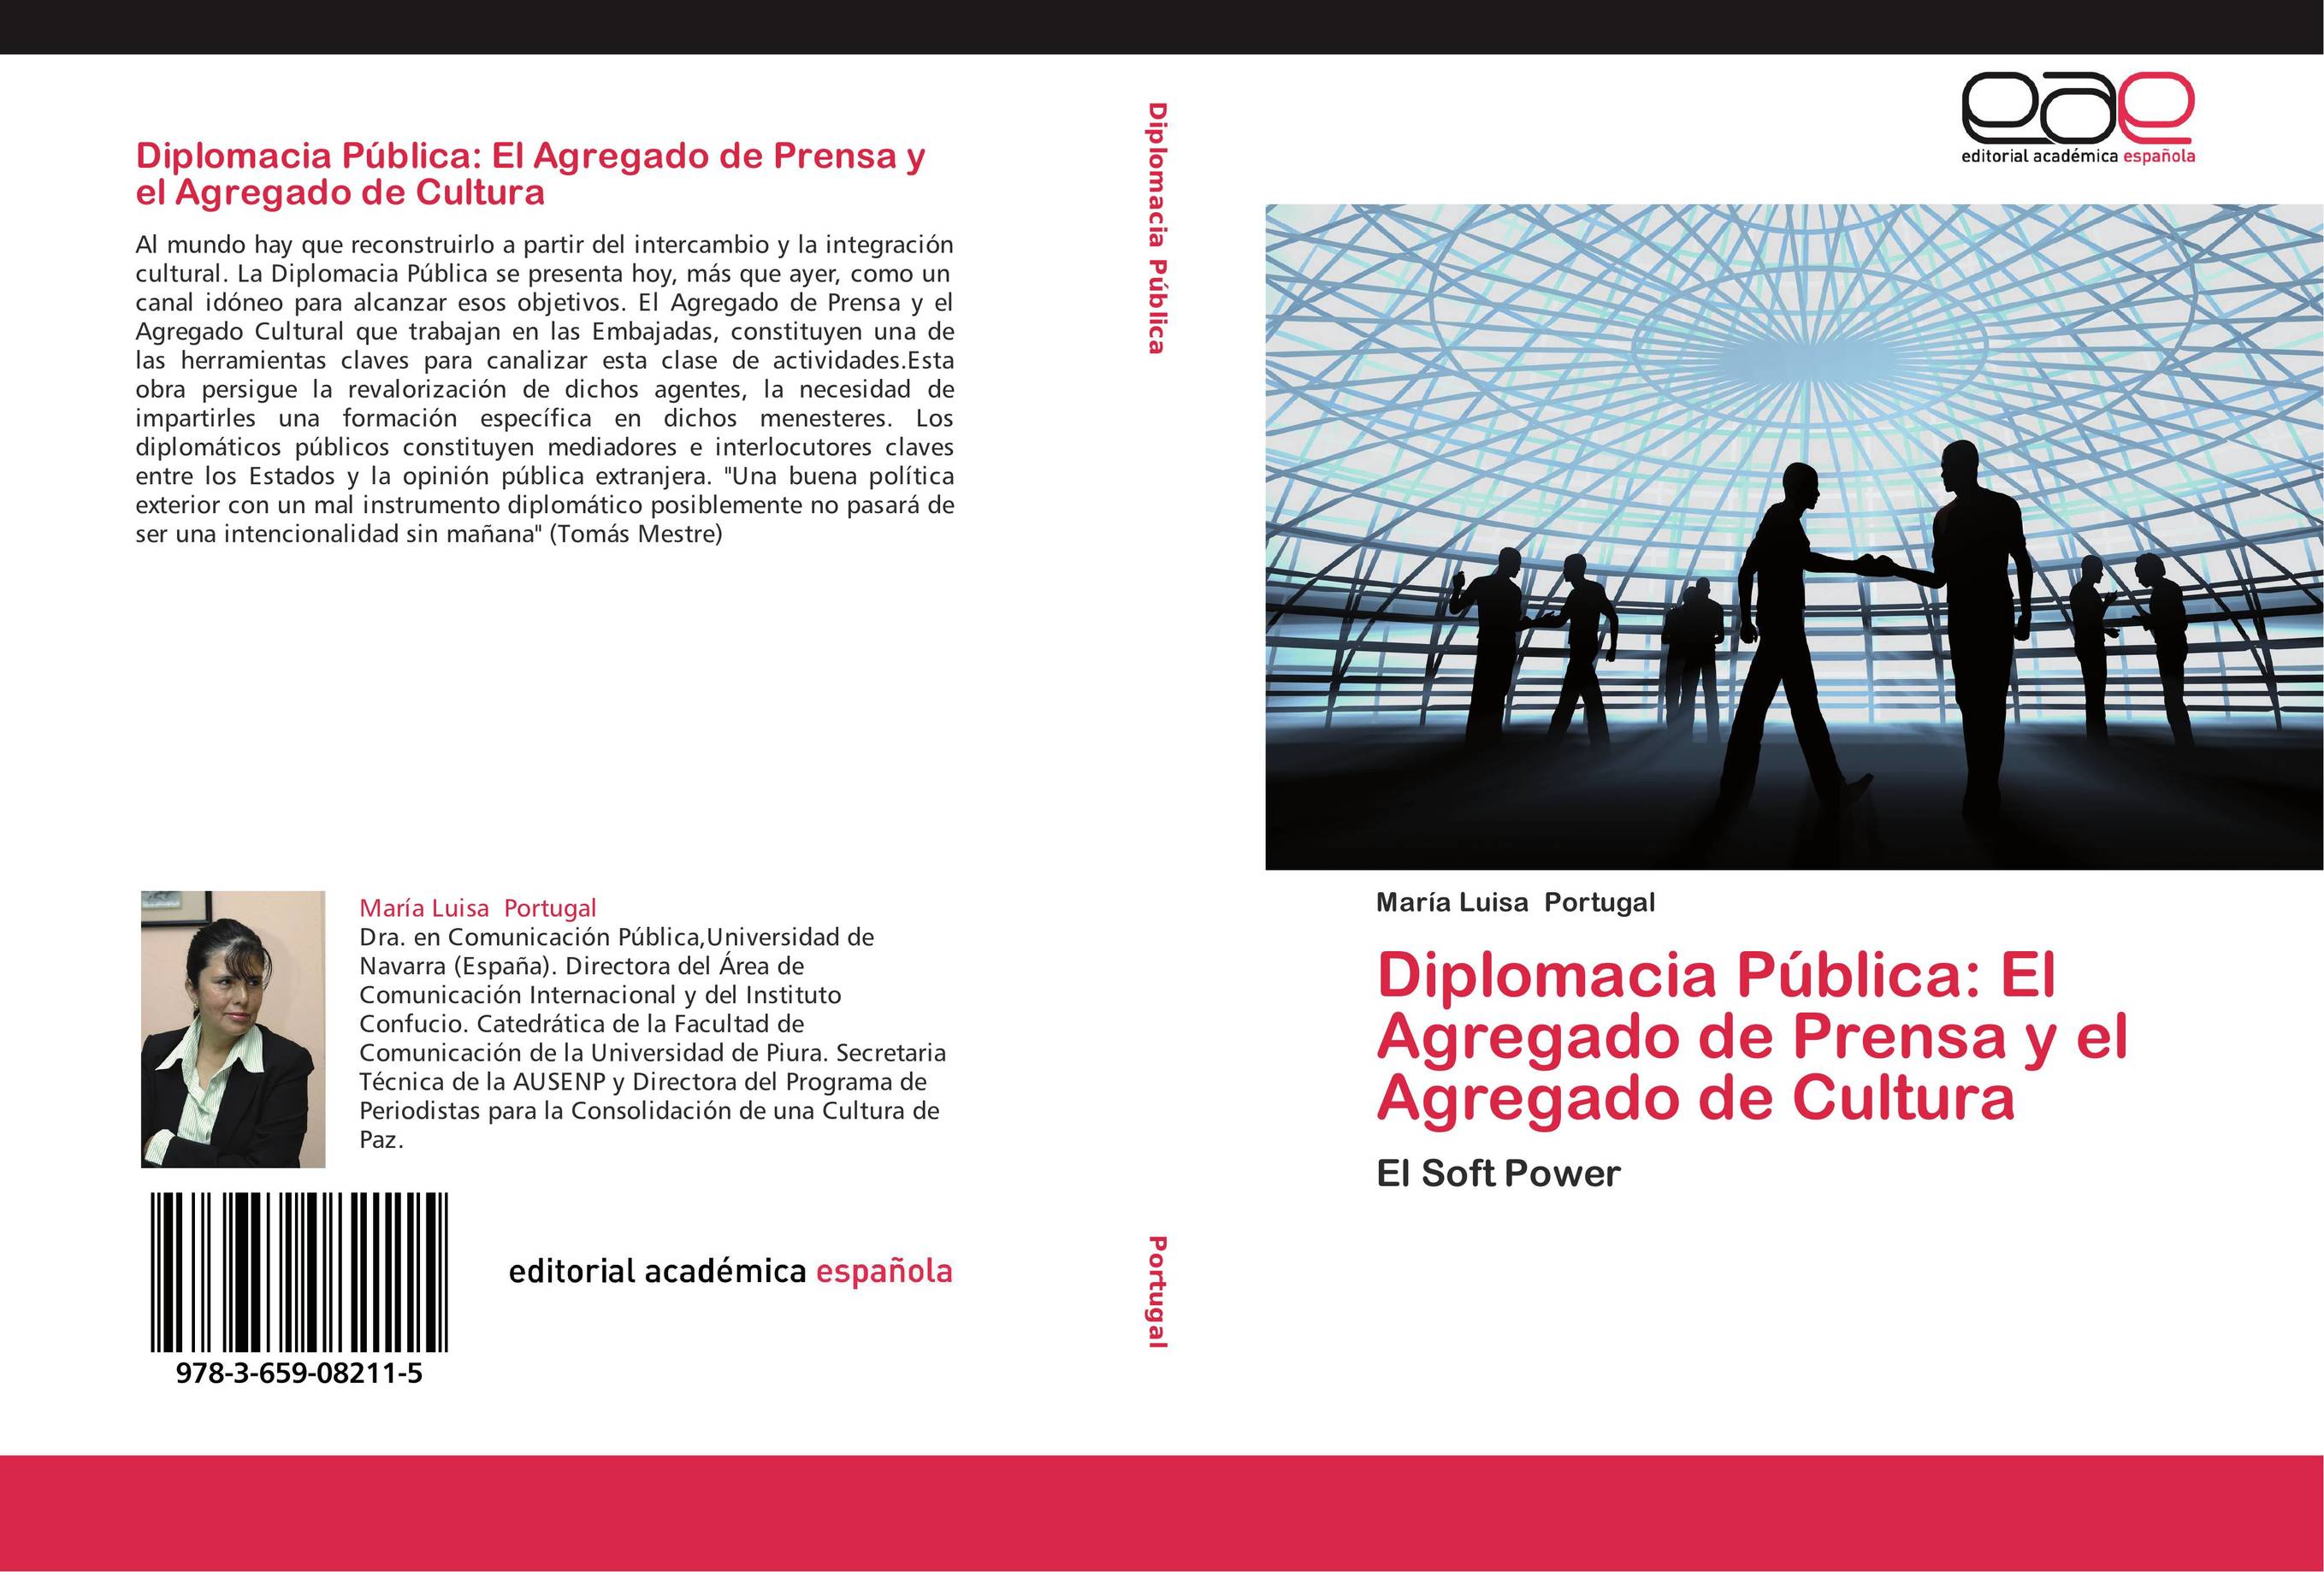 Diplomacia Pública: El Agregado de Prensa y el Agregado de Cultura